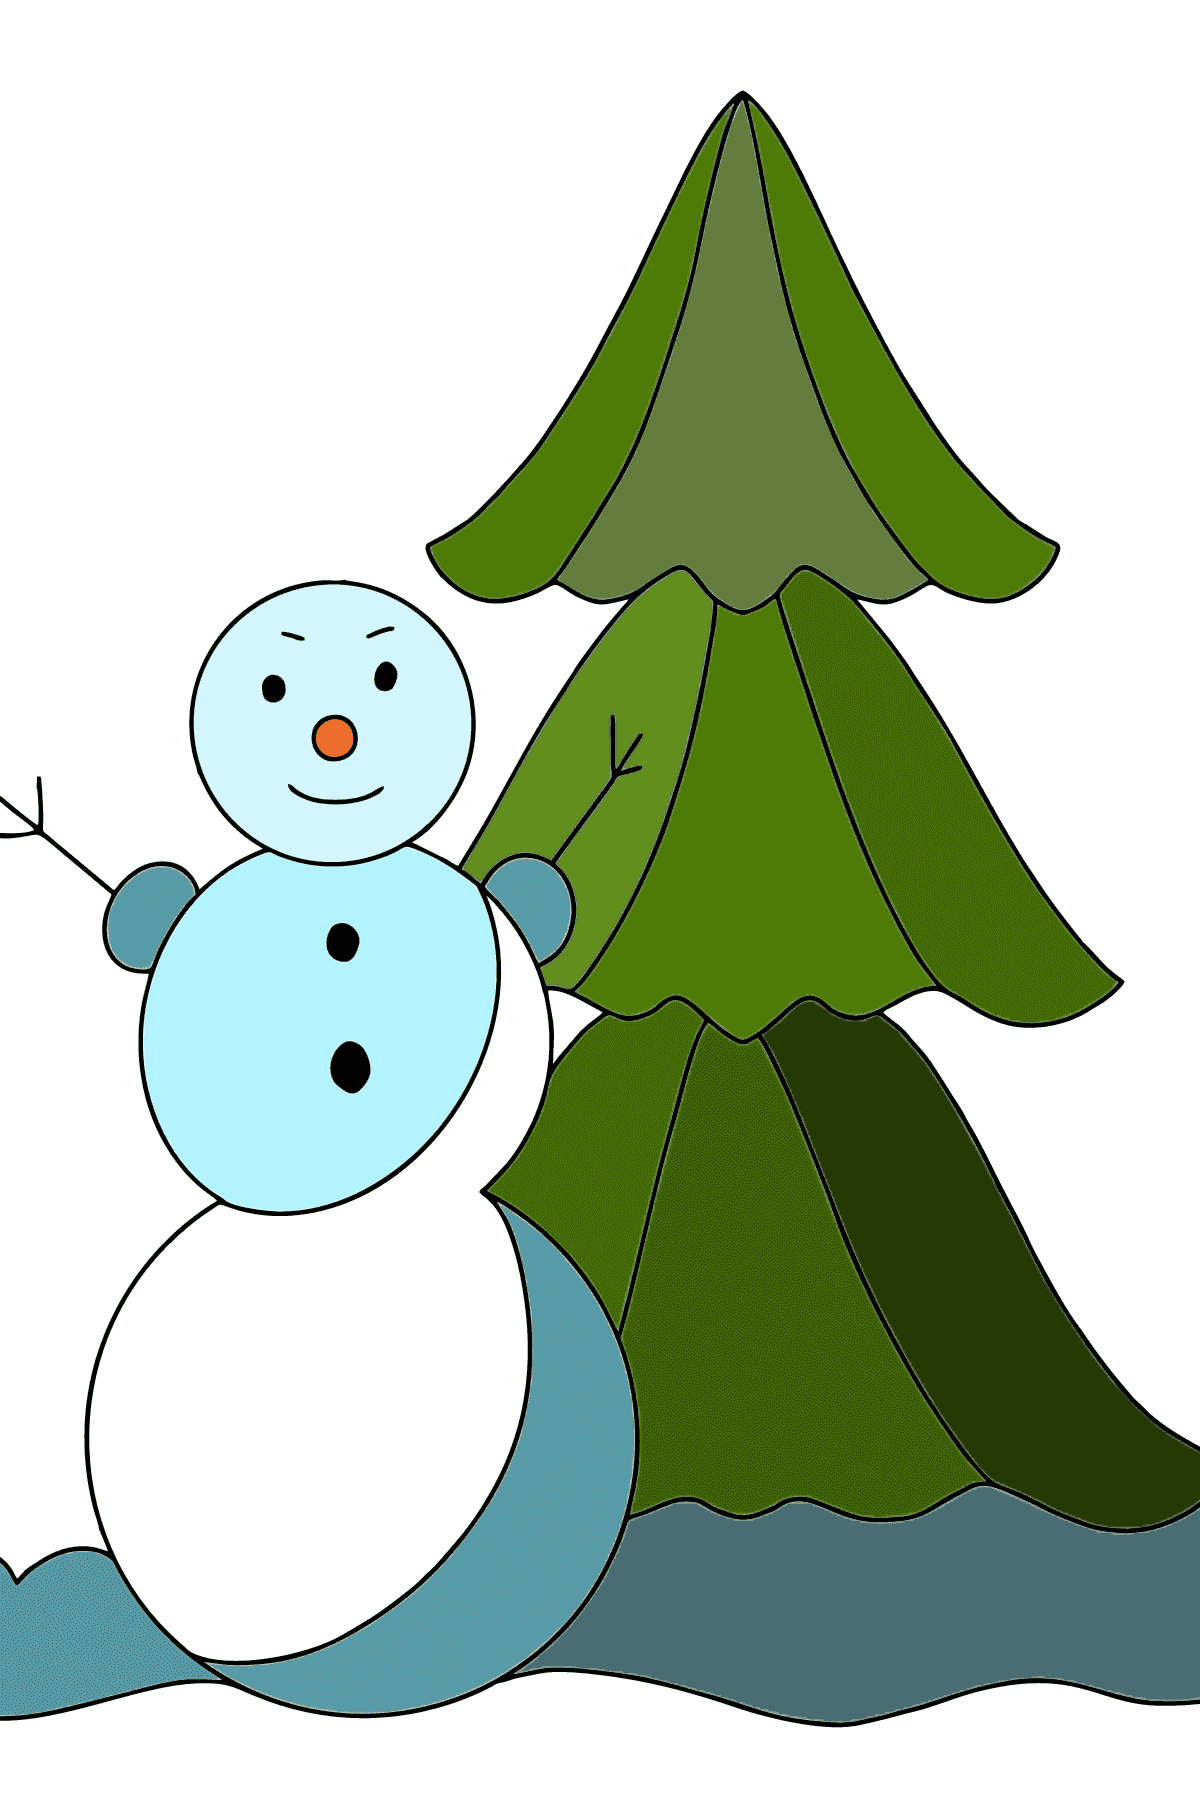 Desenho para colorir do boneco de neve para crianças - Imagens para Colorir para Crianças